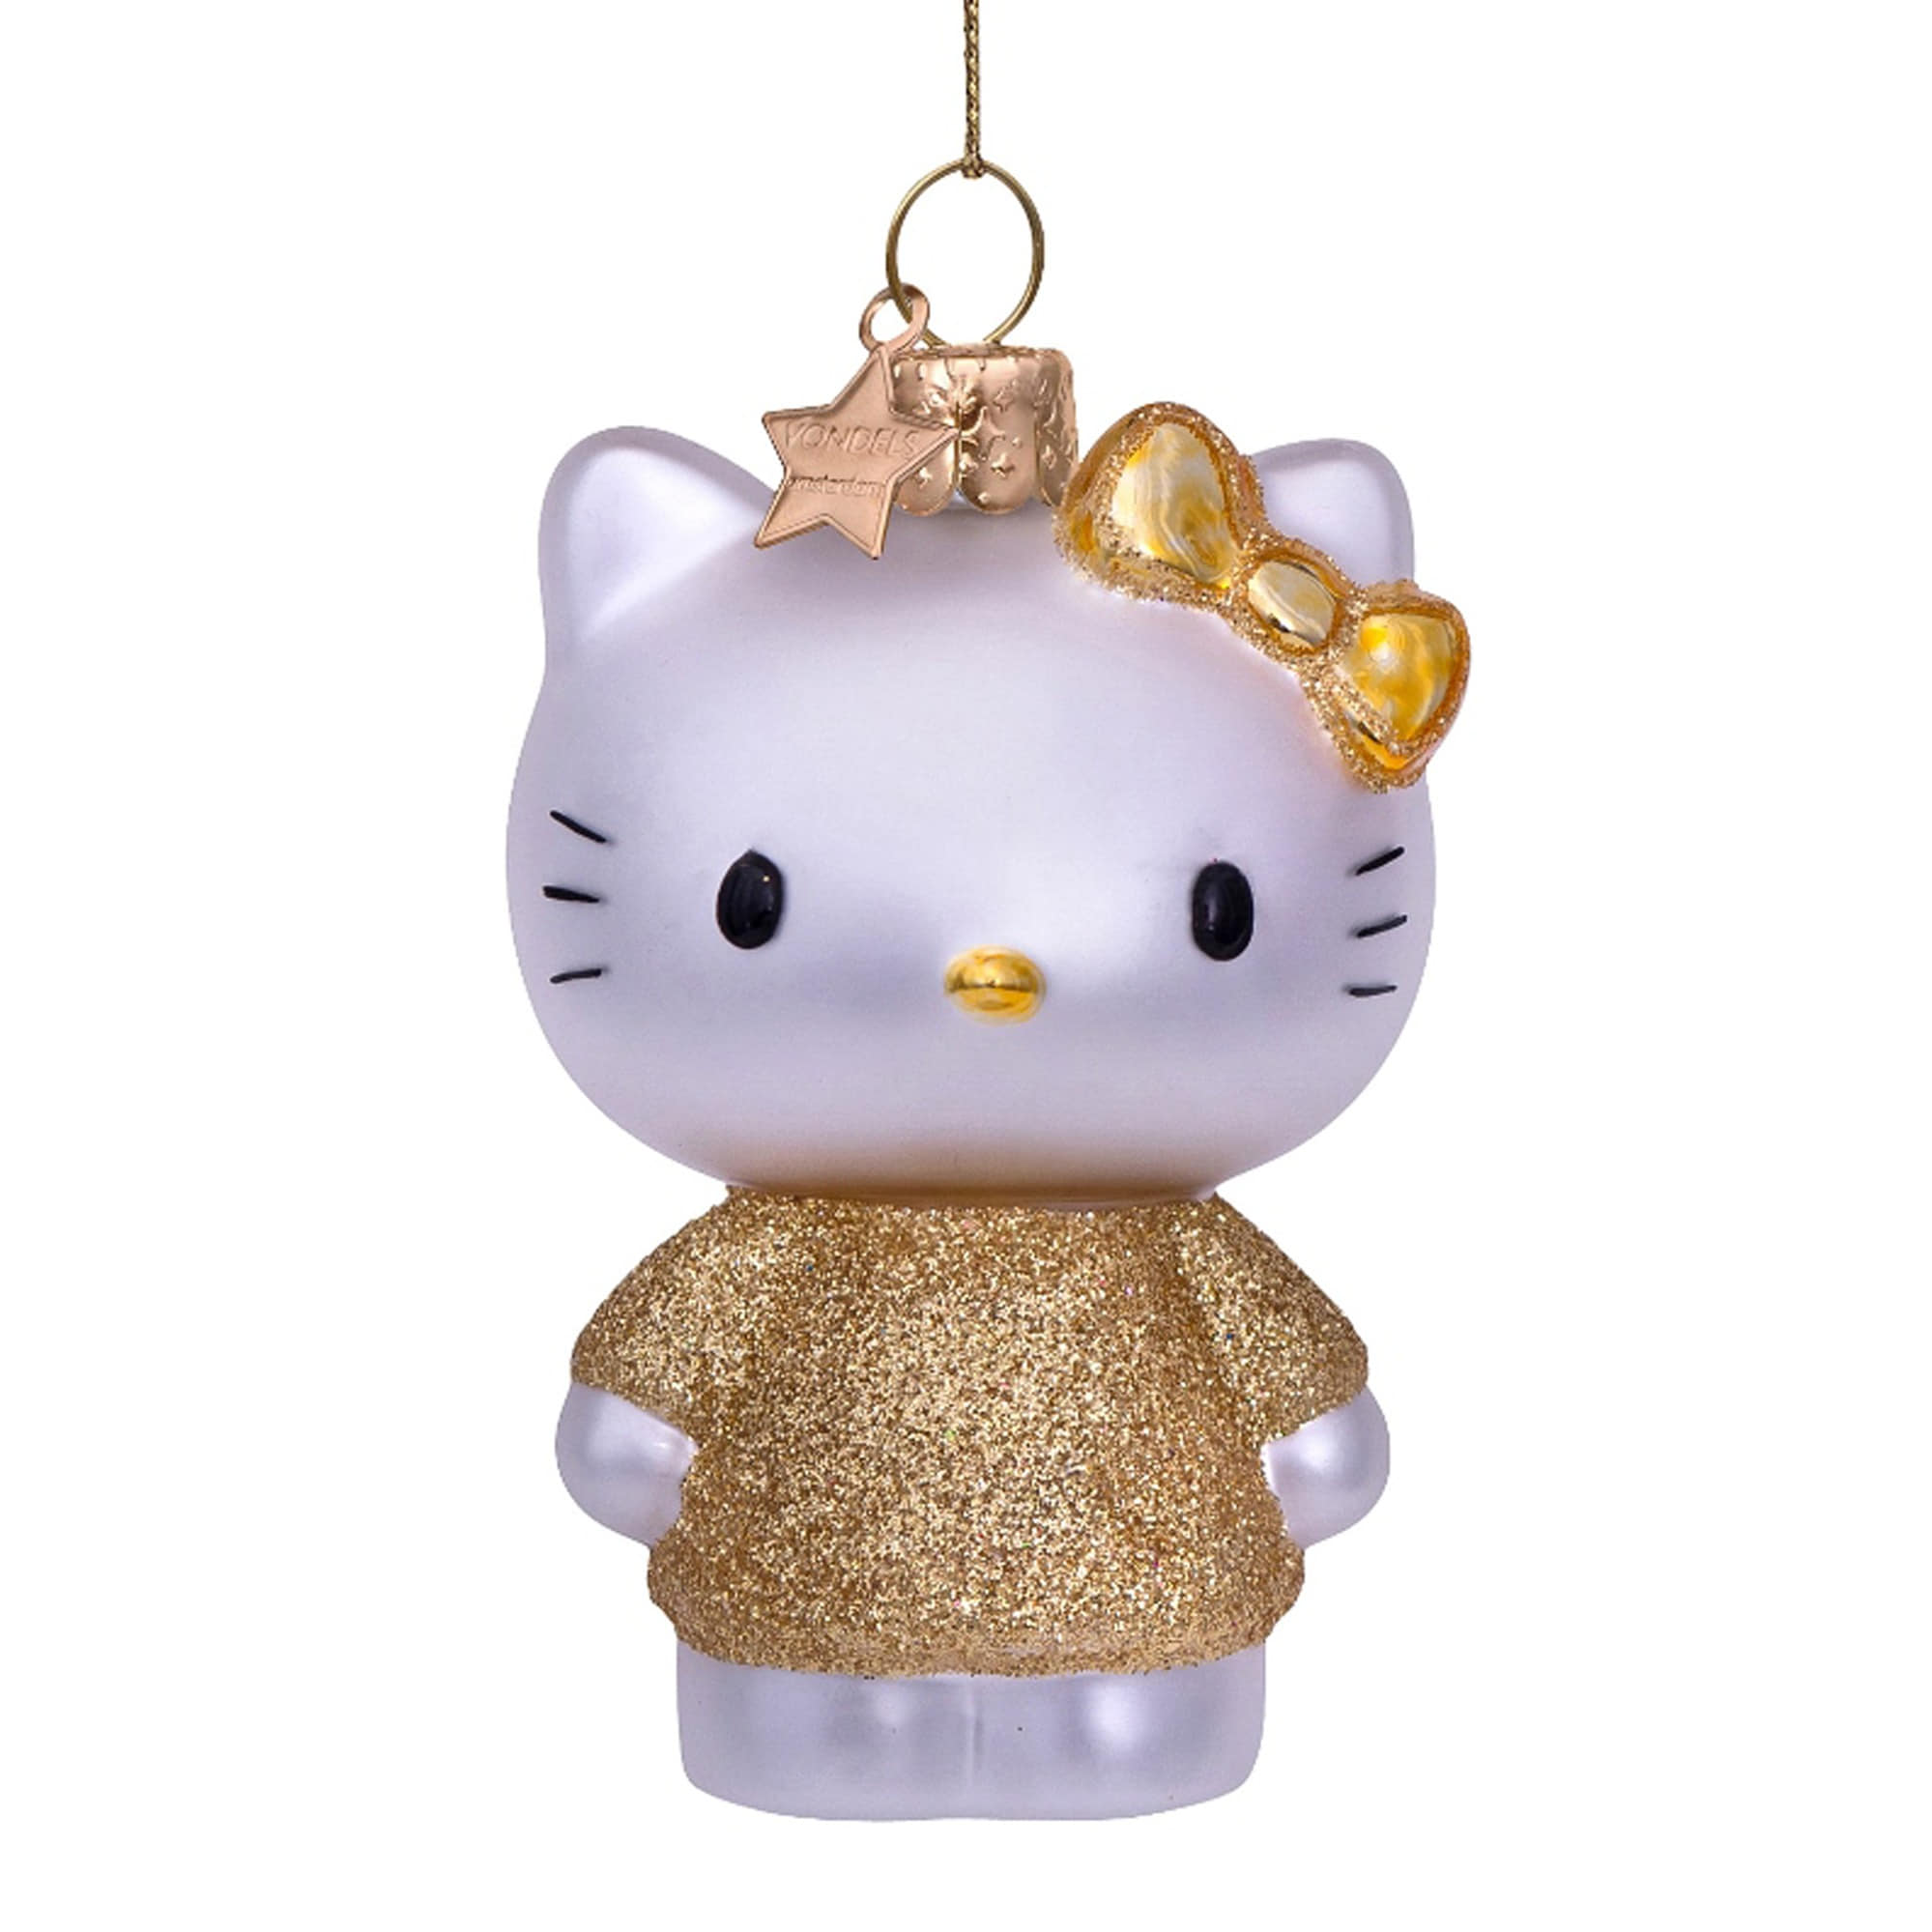 VONDELS Ornament Glass Hello Kitty Gold Dress